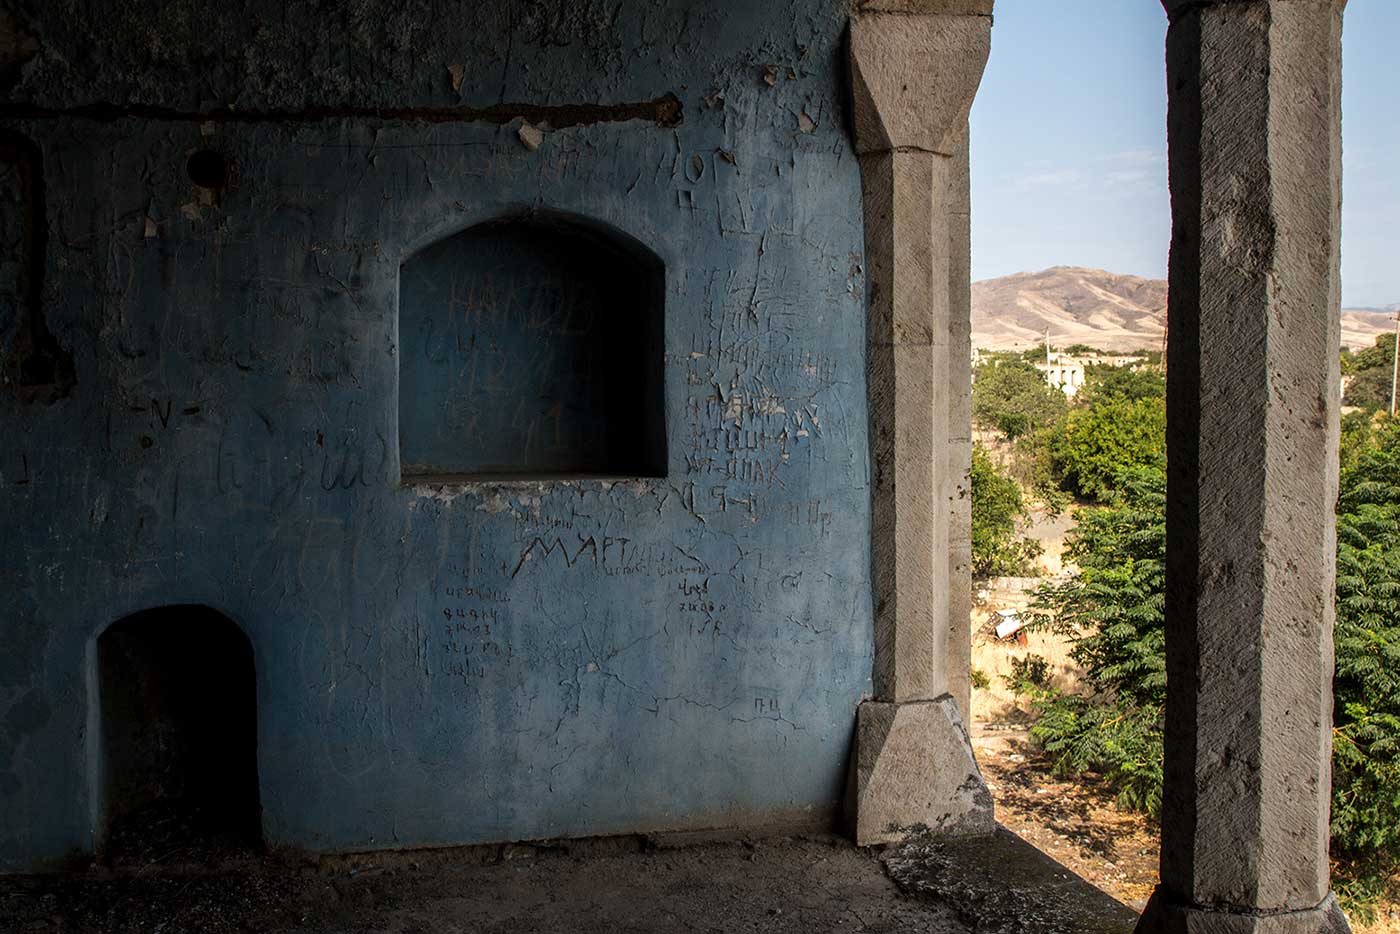 Abandoned mosque in Agdam, Nagorno-Karabakh.